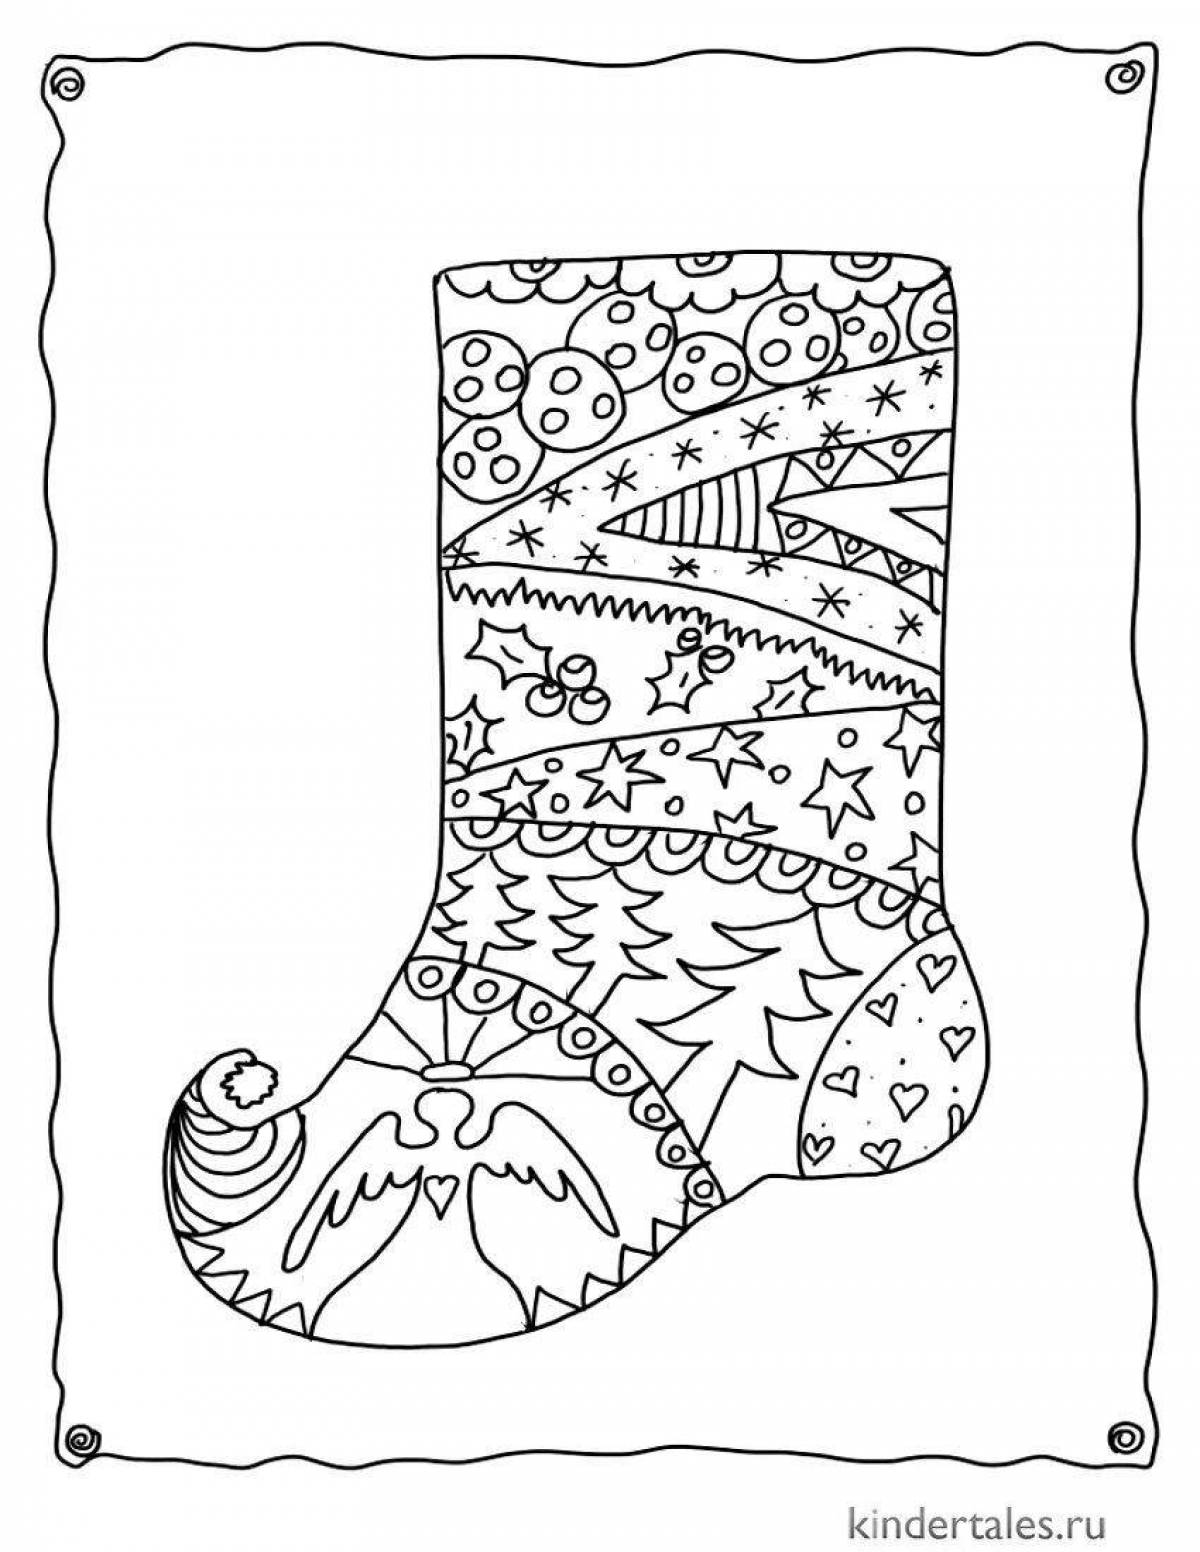 Animated Christmas socks